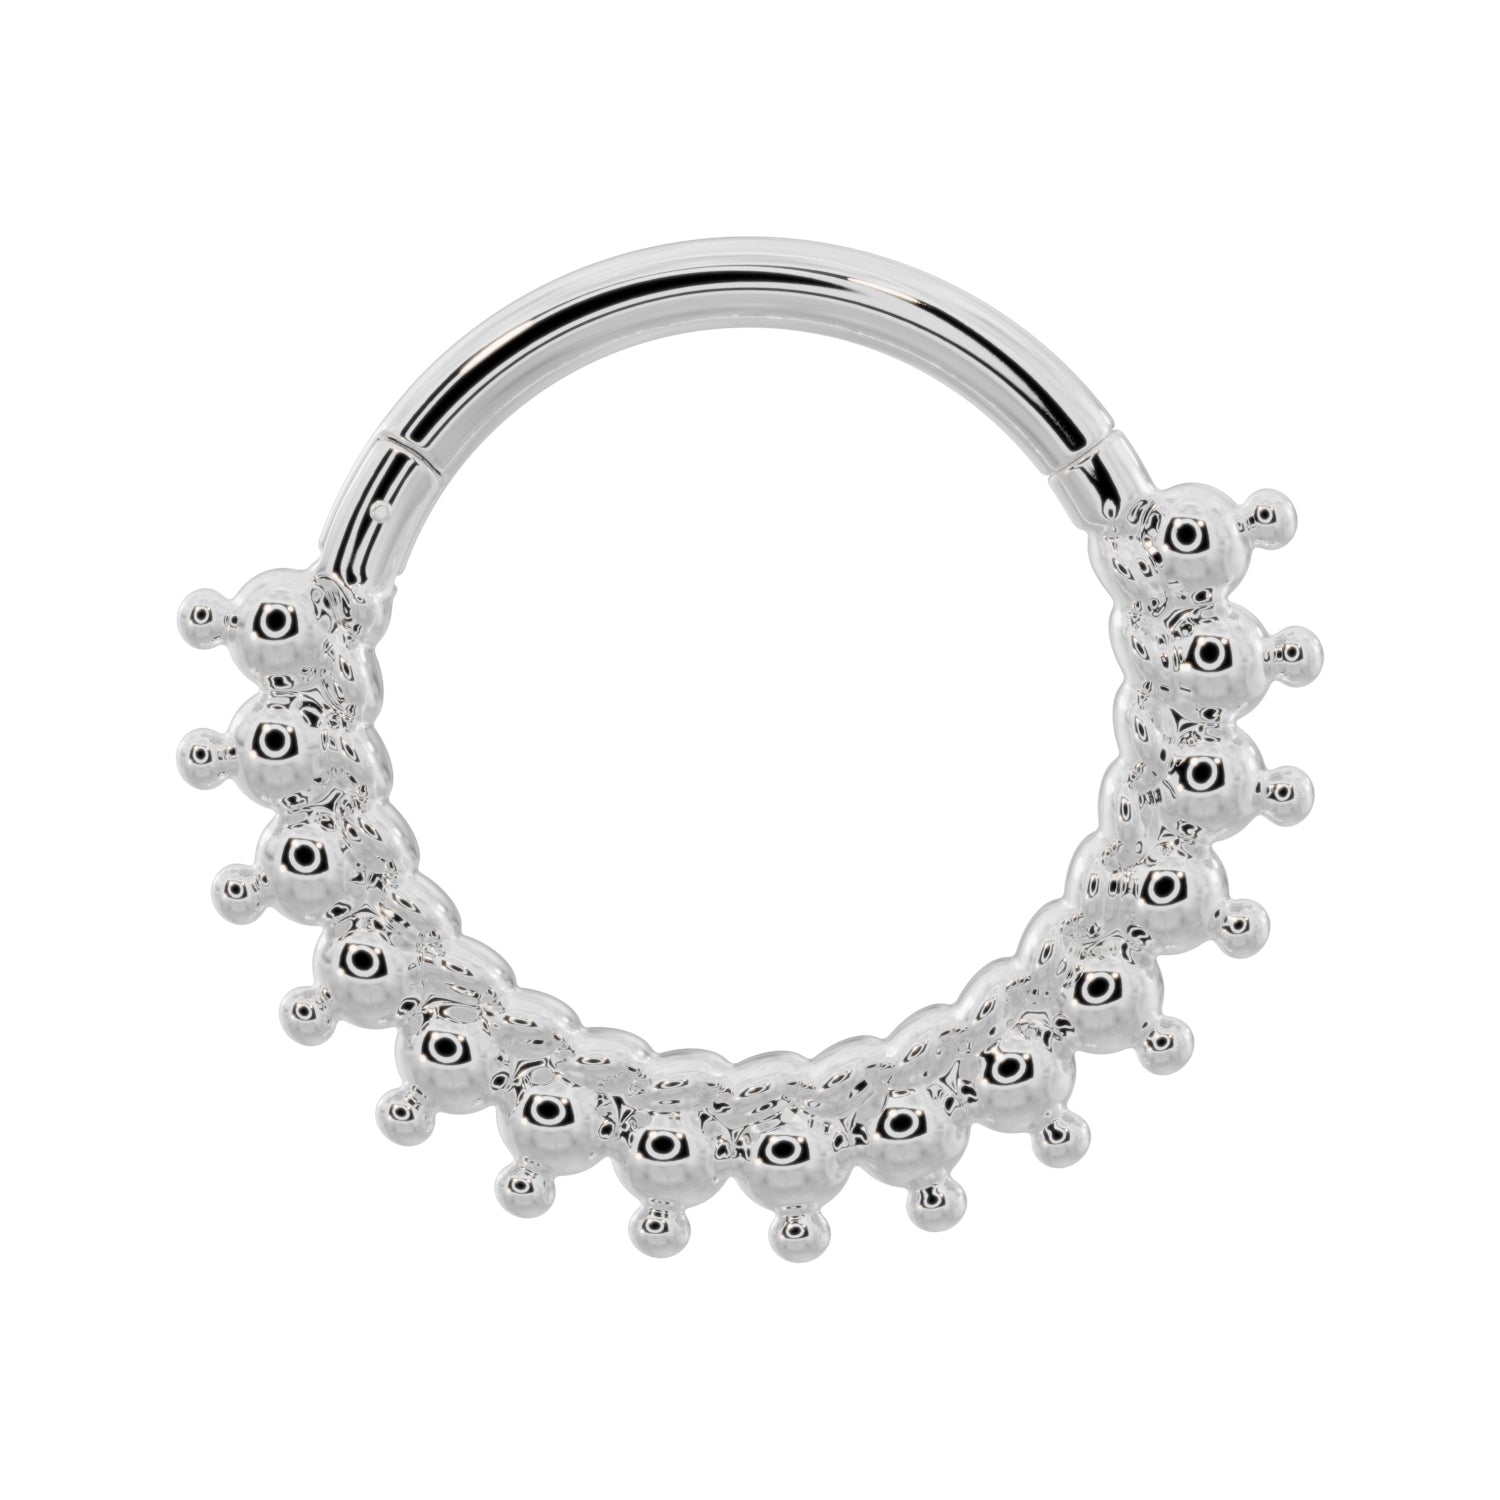 Shala Beads 14k Gold Clicker Ring Hoop-14K White Gold   14G (1.6mm)   9 16